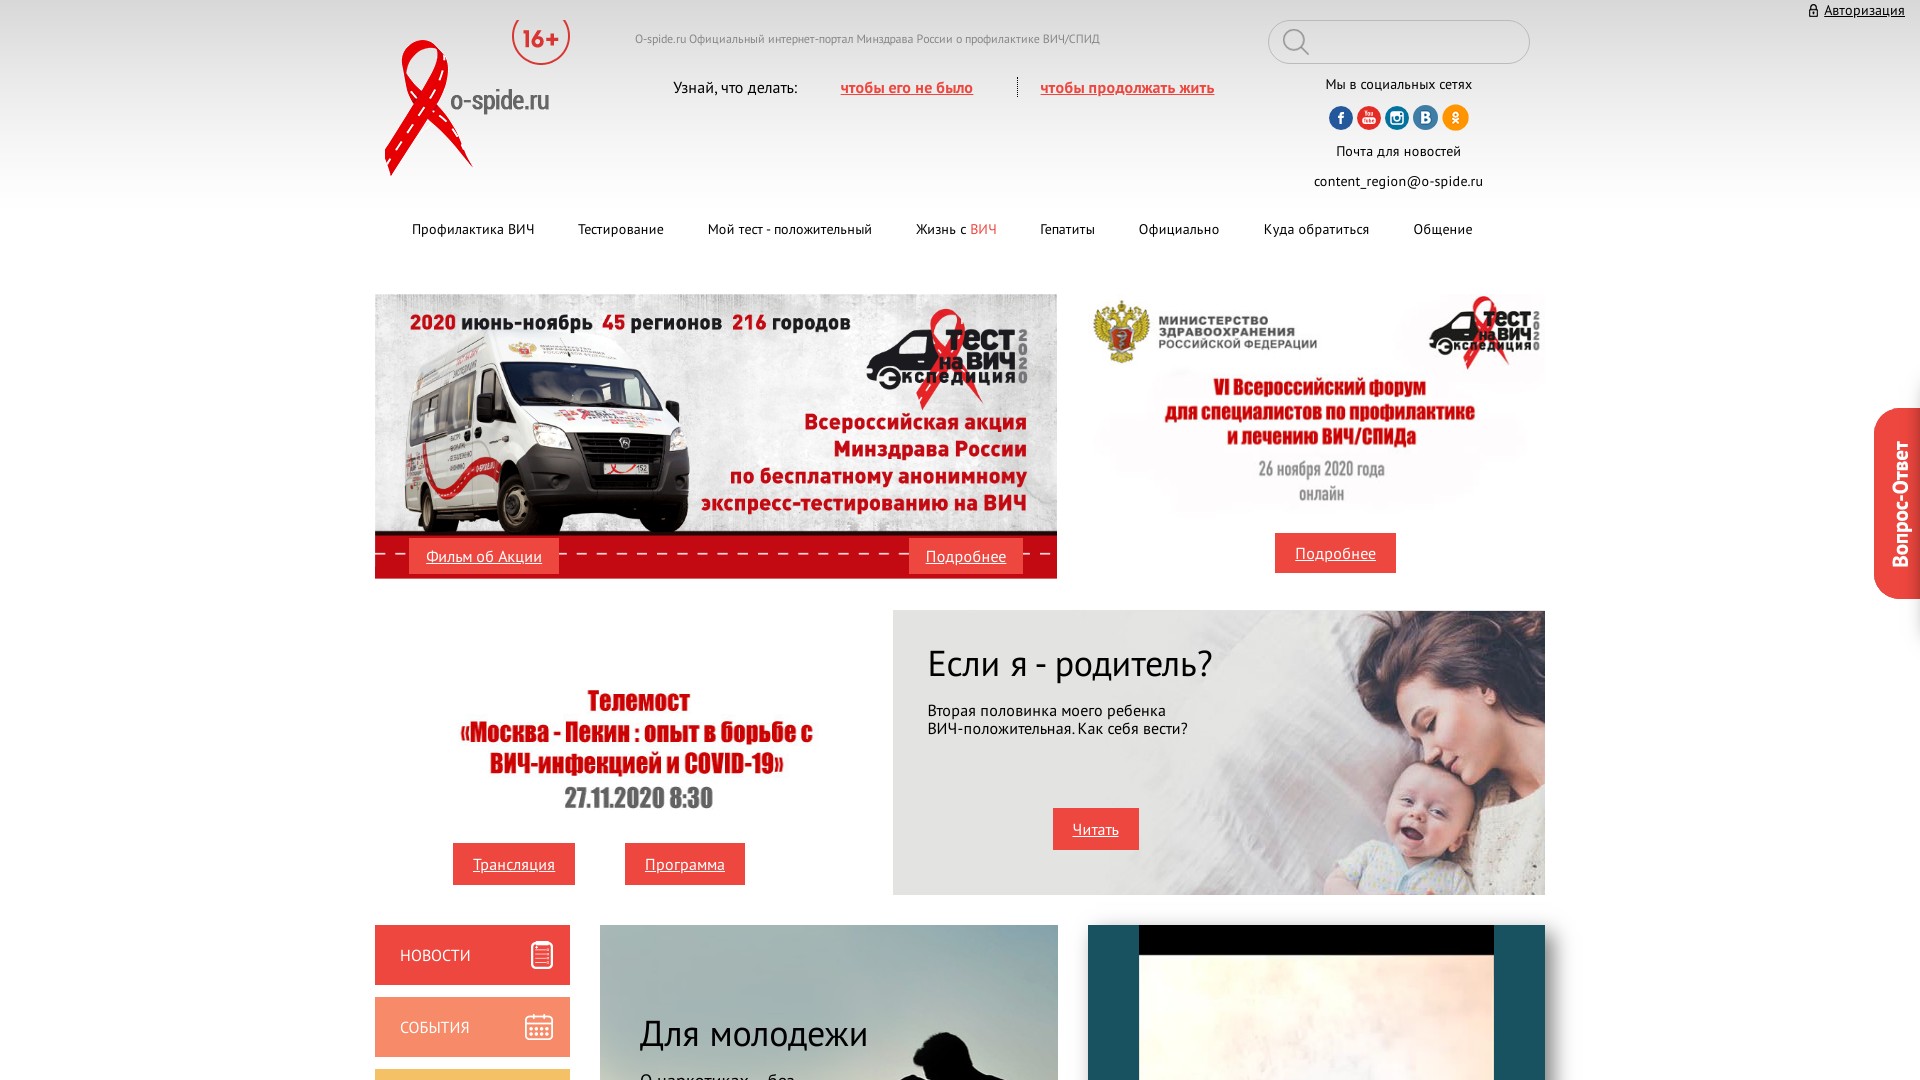 O-spide.ru – первый в России государственный Интернет-портал о профилактике и лечении ВИЧ/СПИДа